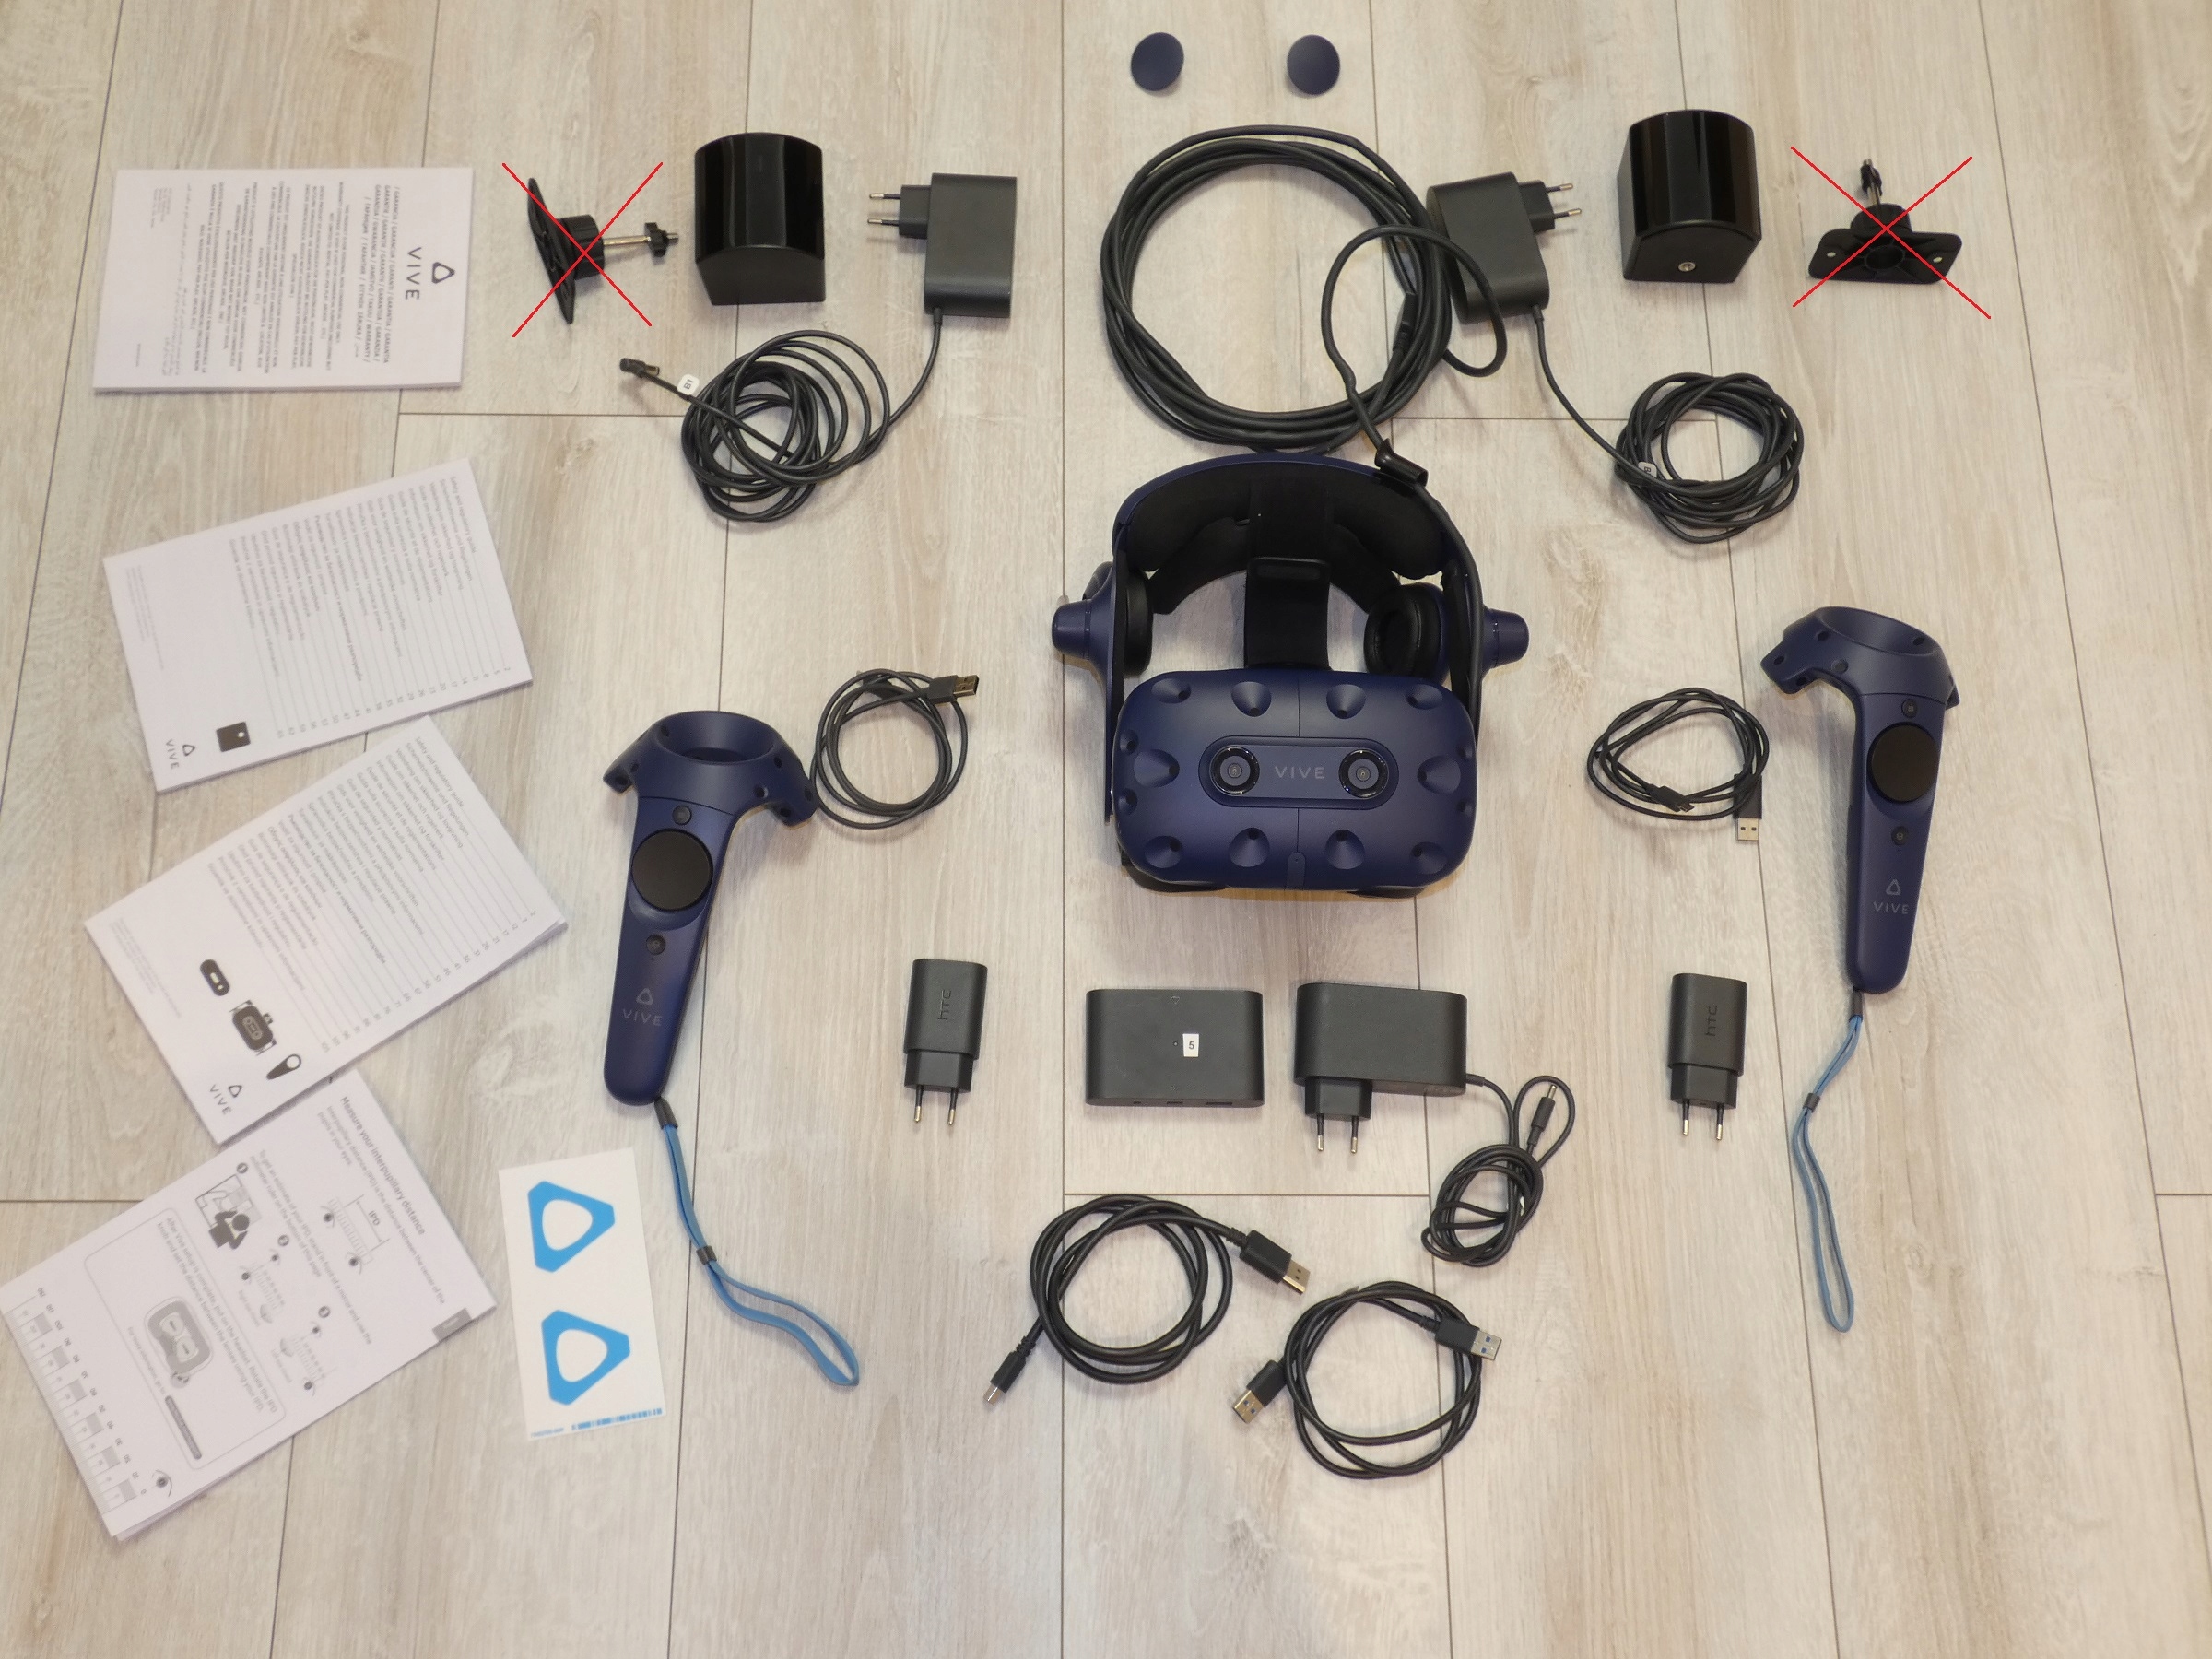 Gogle VR HTC Vive Pro Full Kit Wirtualna Rzeczywistość 3D ** SUPER CENA **  - Sklep, Opinie, Cena w Allegro.pl